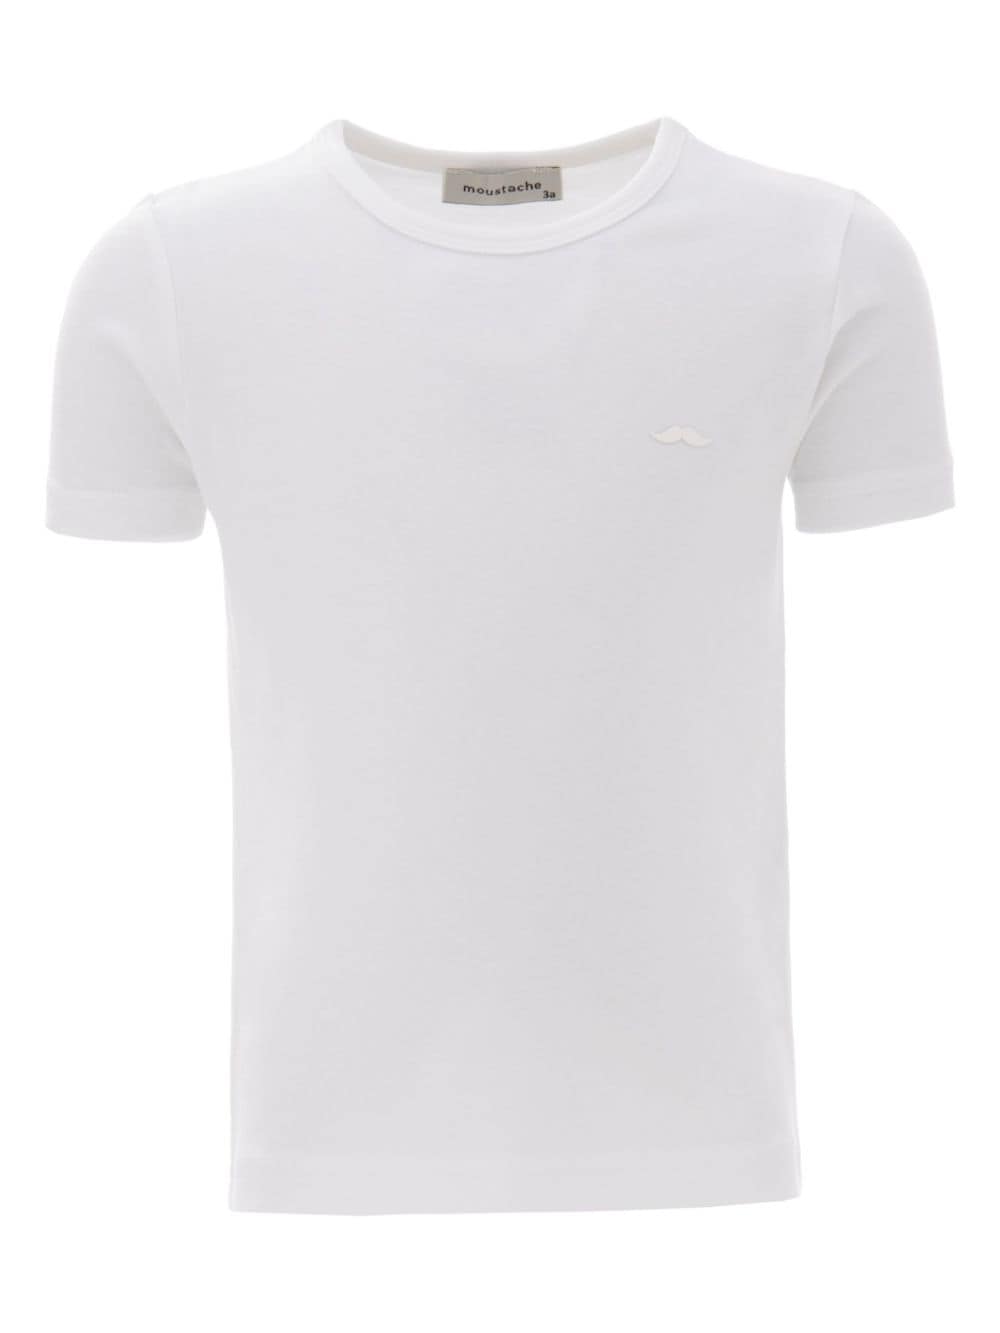 Moustache crew-neck cotton T-shirt - Bianco